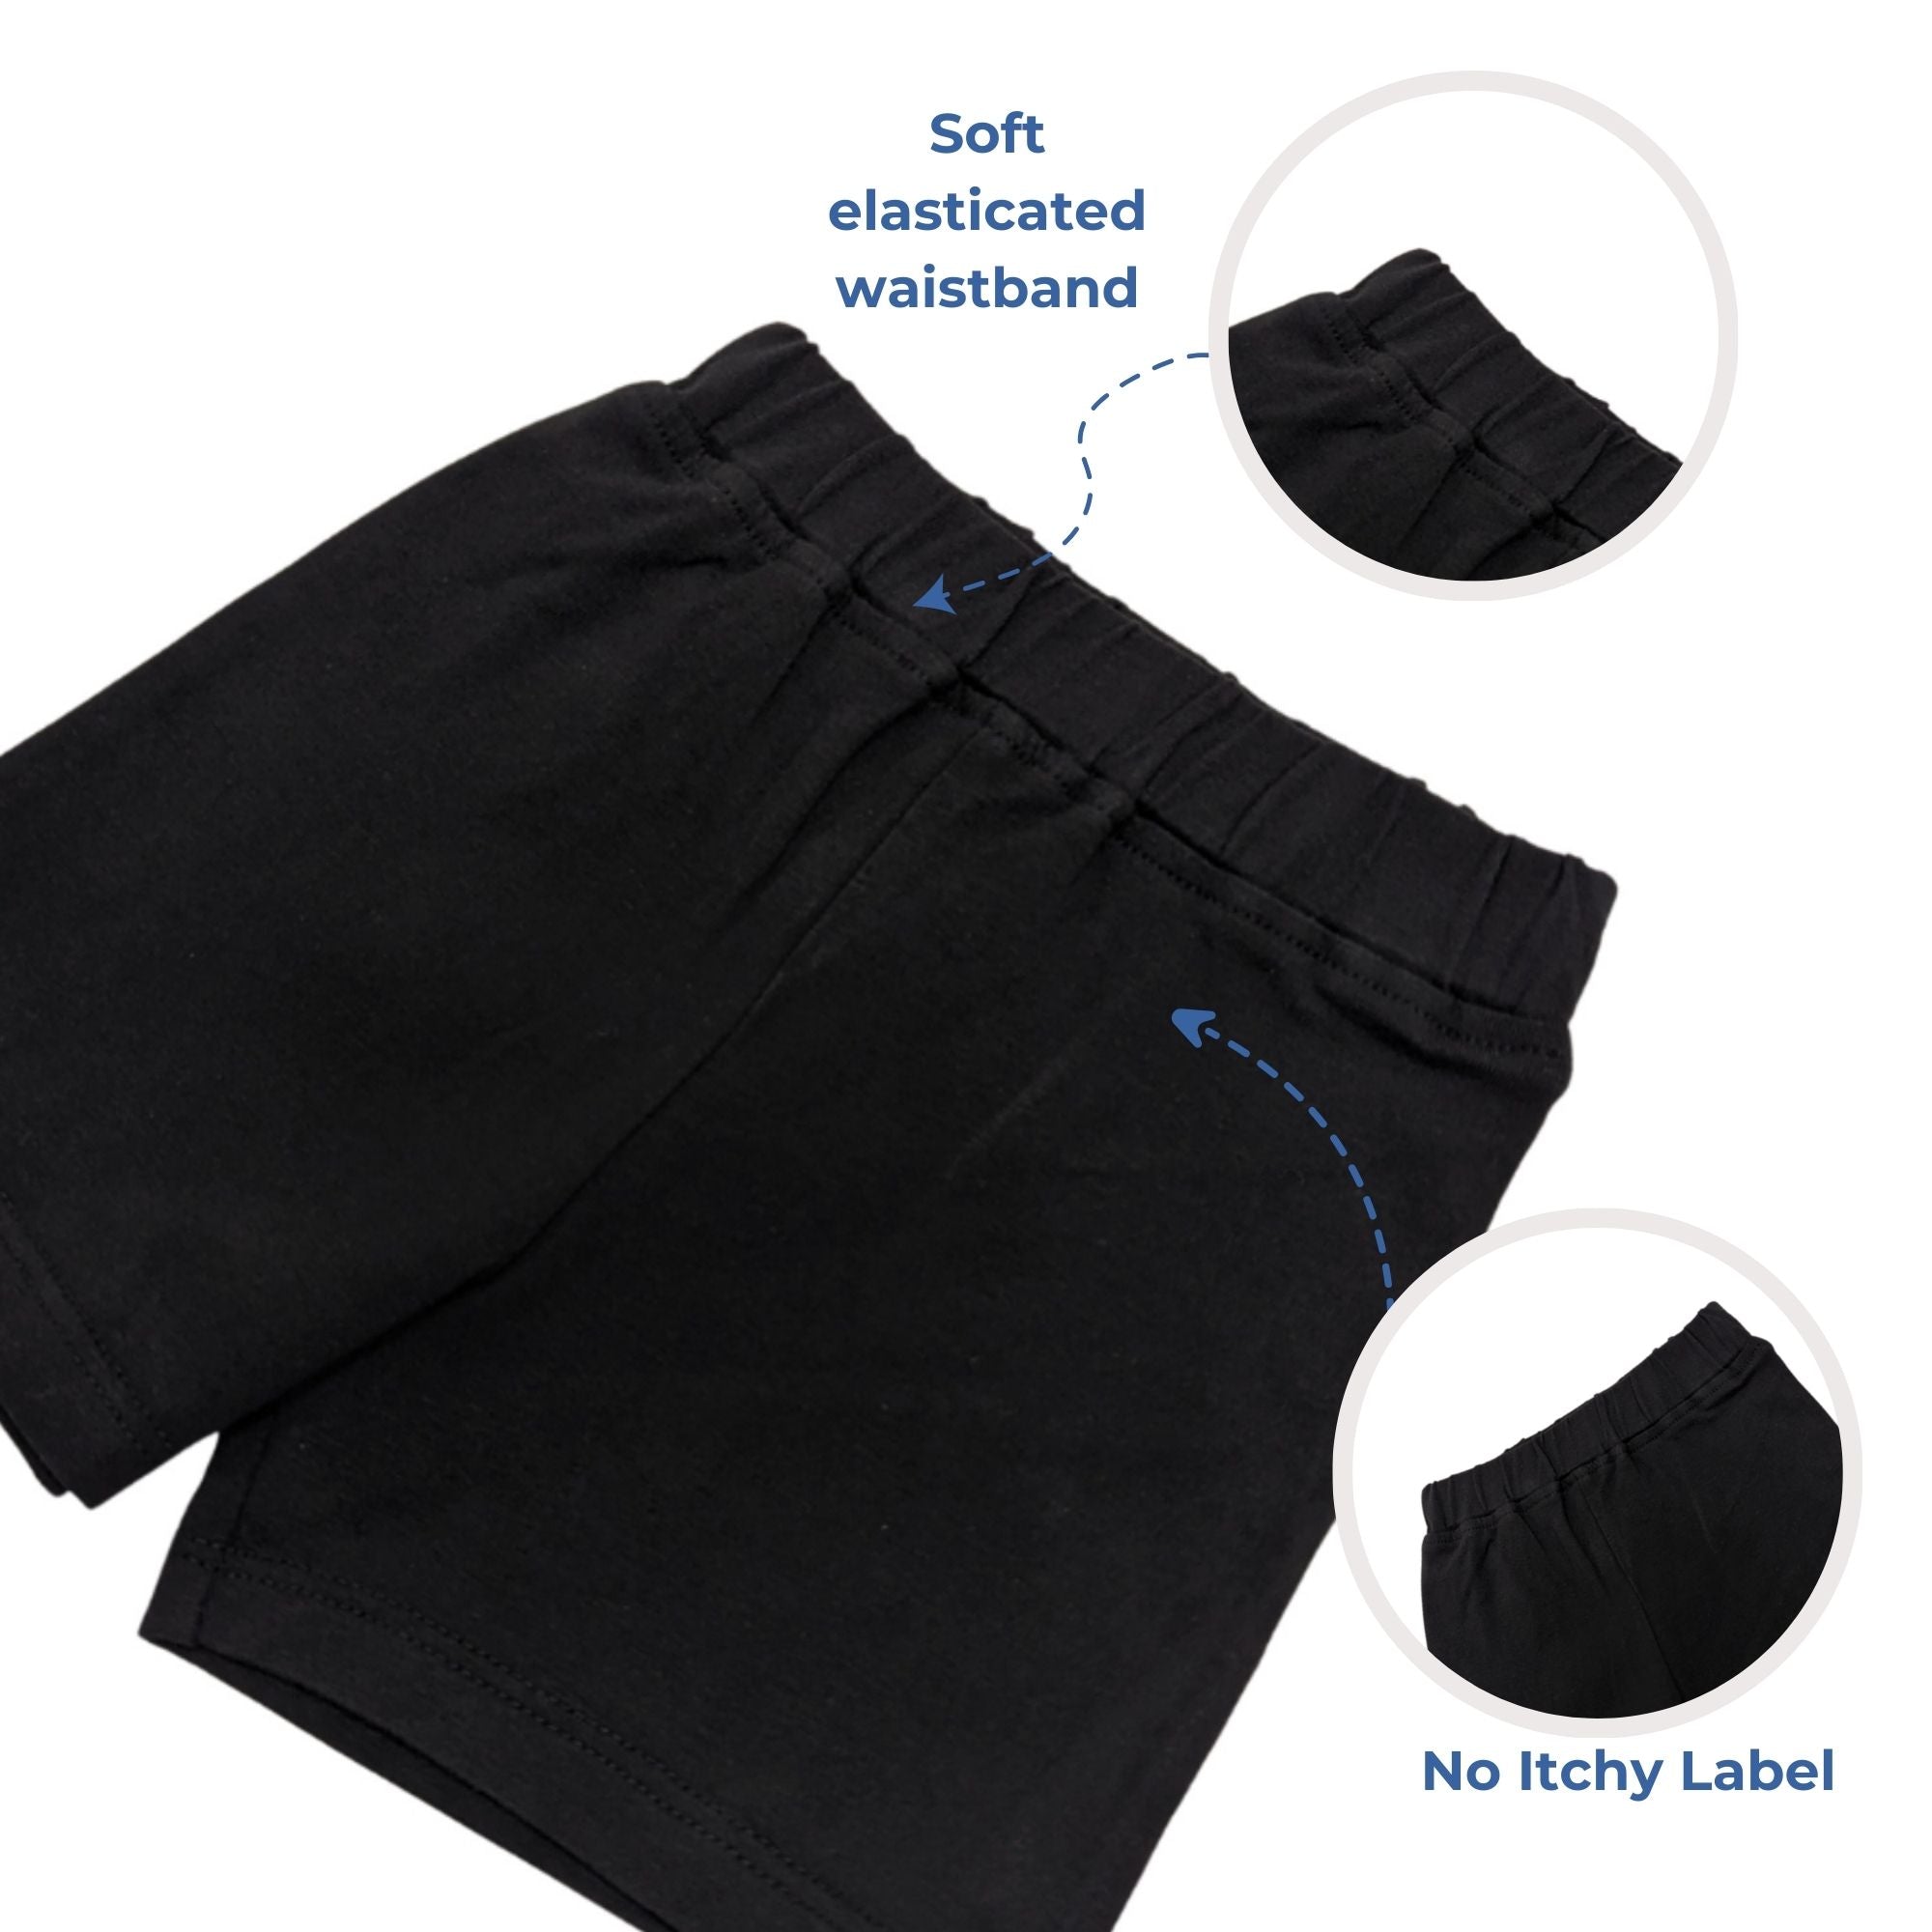 Unisex Shorts - Black